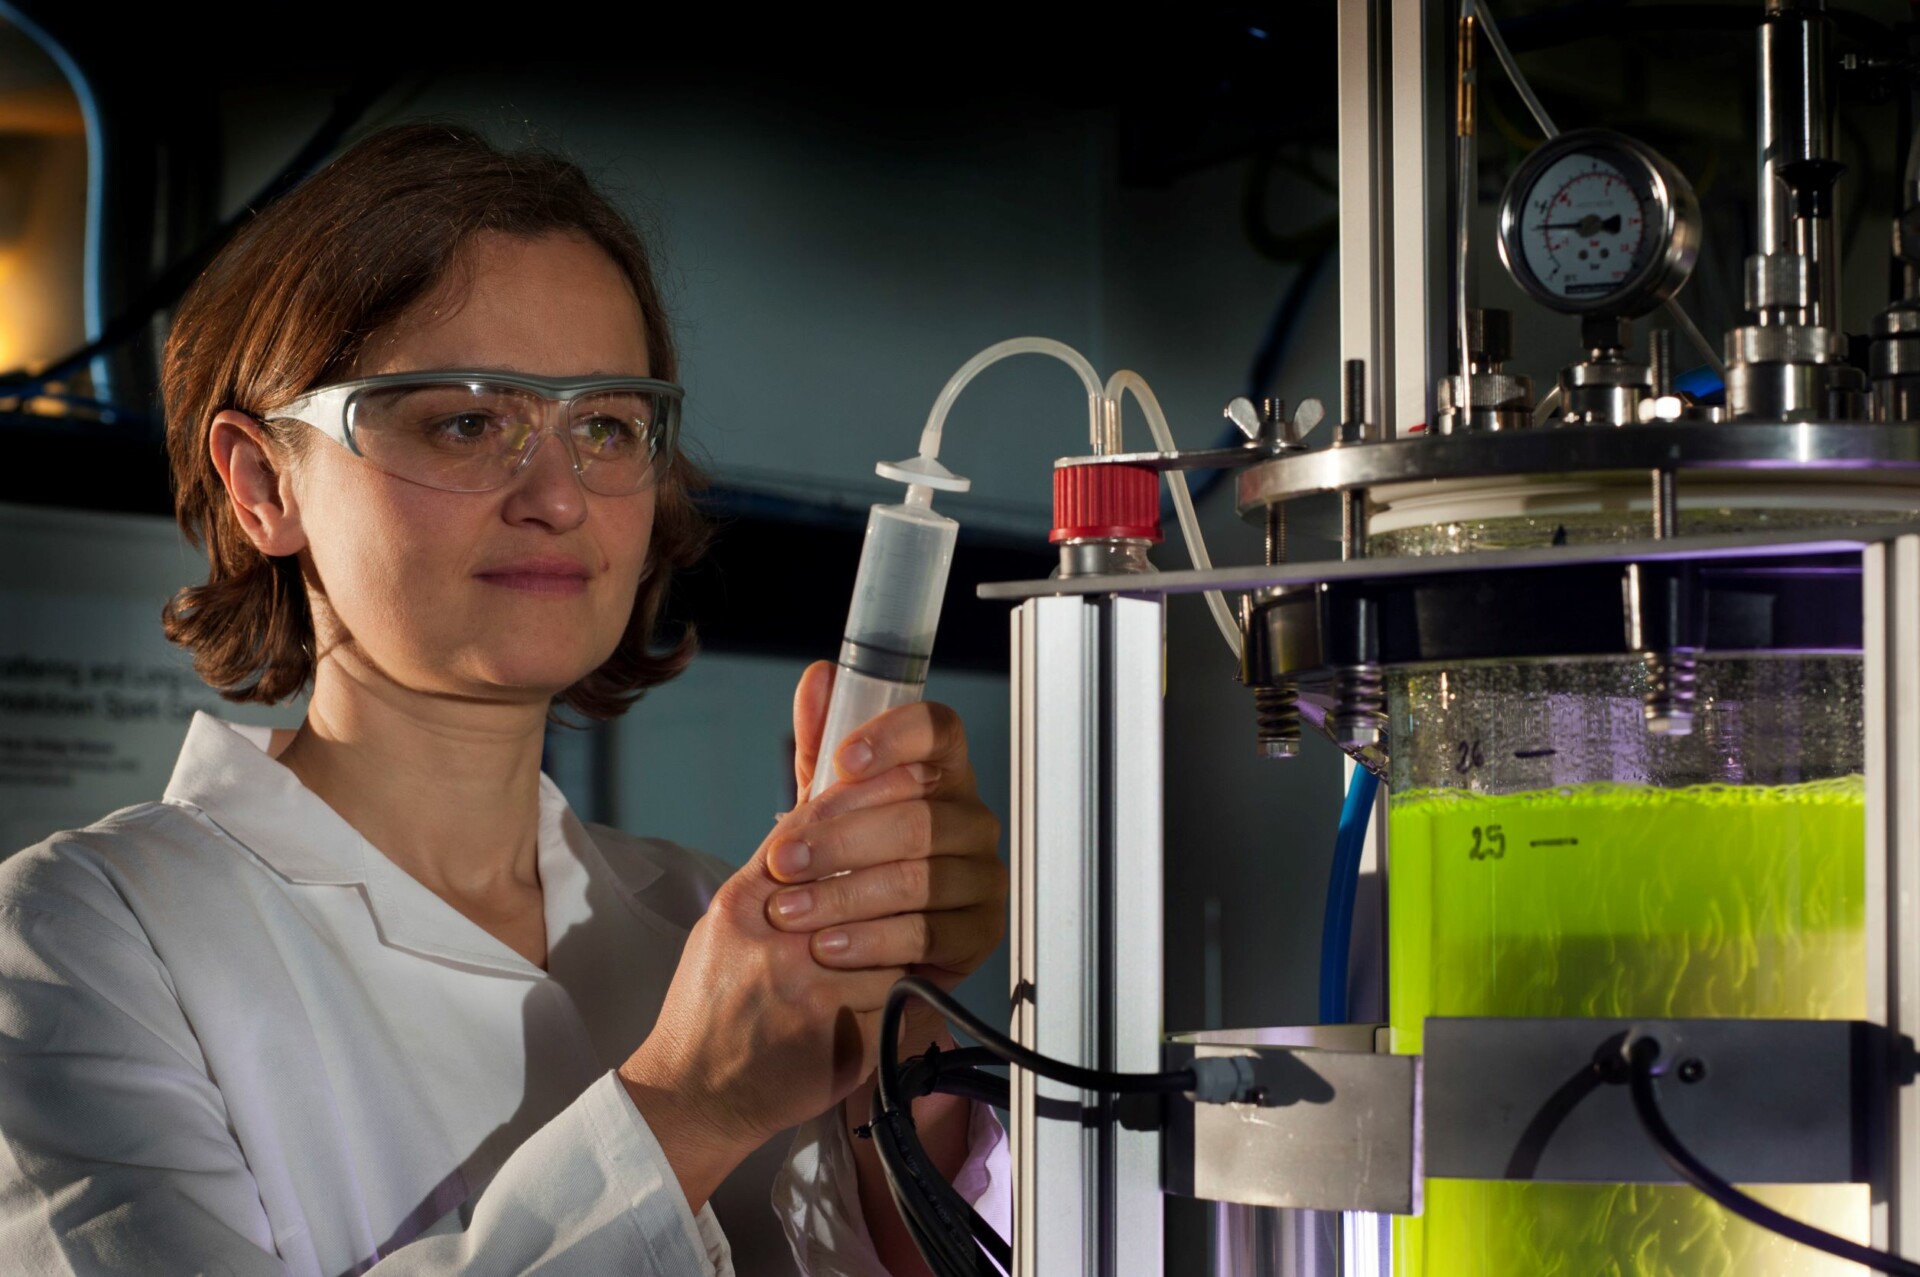 Grüne Energie aus Algen - Eine Wissenschaftlerin kontrolliert im Labor eine grüne Flüssigkeit in einem Glaszylinder